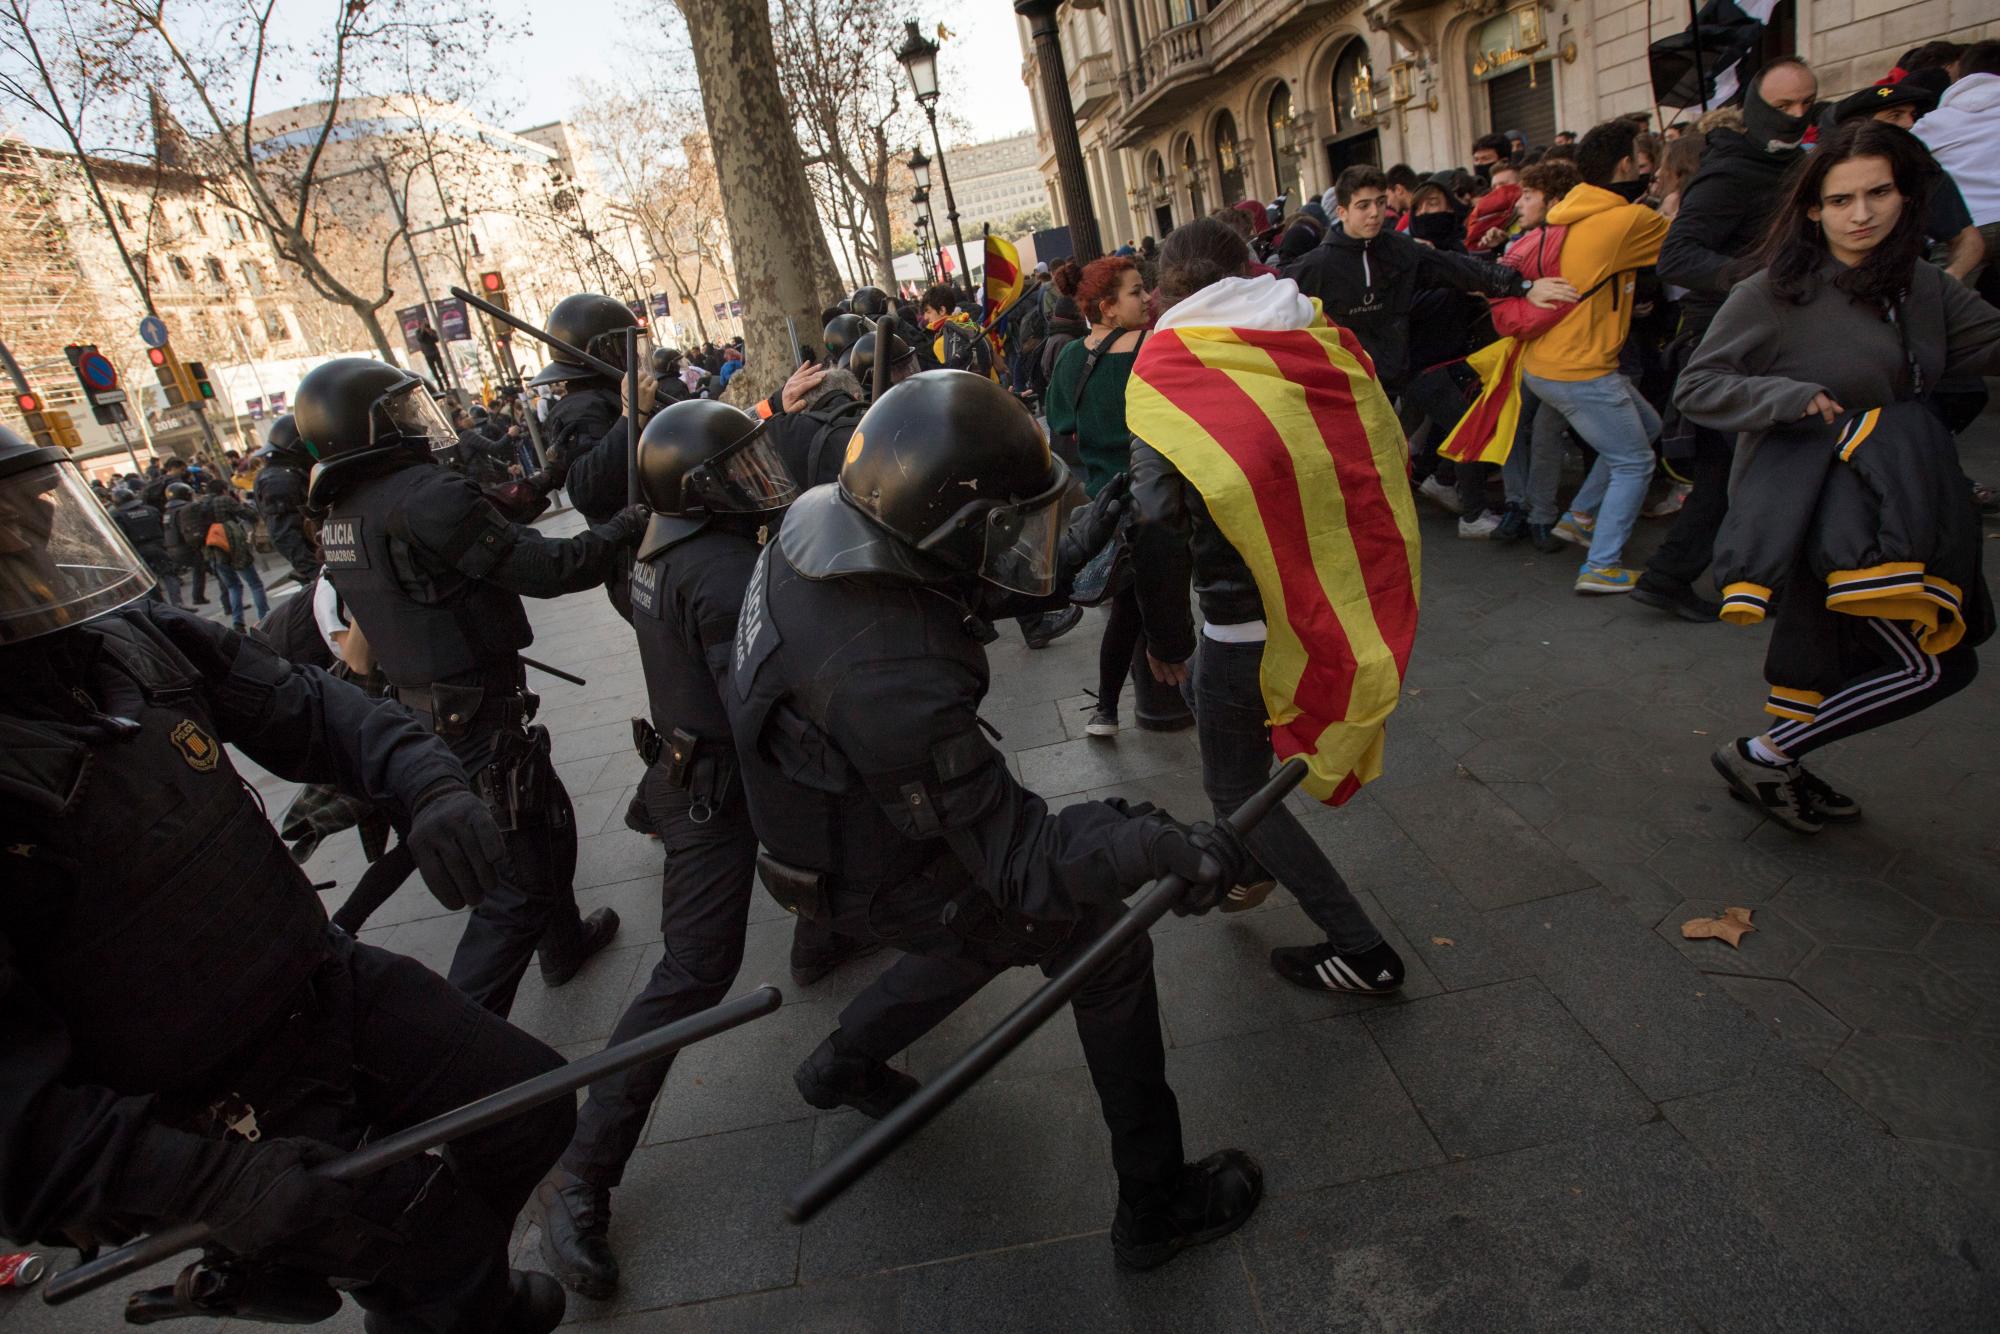  Agentes de la policía catalana se enfrentan a manifestantes frente al metro después de bloquear una vía férrea, durante una huelga general en Cataluña, España, el jueves 21 de febrero de 2019. Los manifestantes que respaldan la secesión de Cataluña de España se enfrentaron con la policía y bloquearon las principales carreteras y vías del tren.